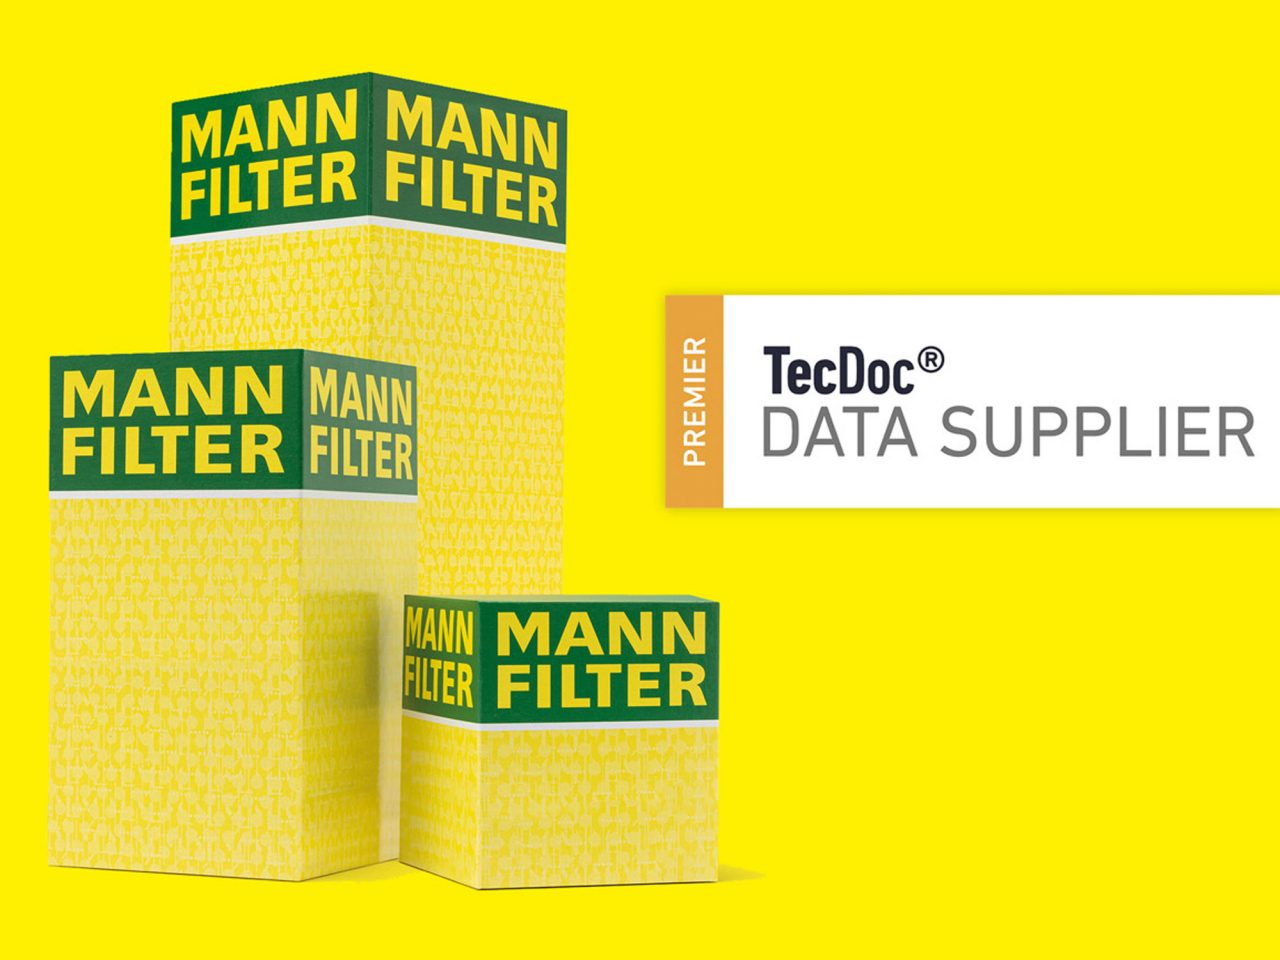  MANN-FILTER von TecAlliance als „Premier Data Supplier“ (PDS) ausgezeichnet